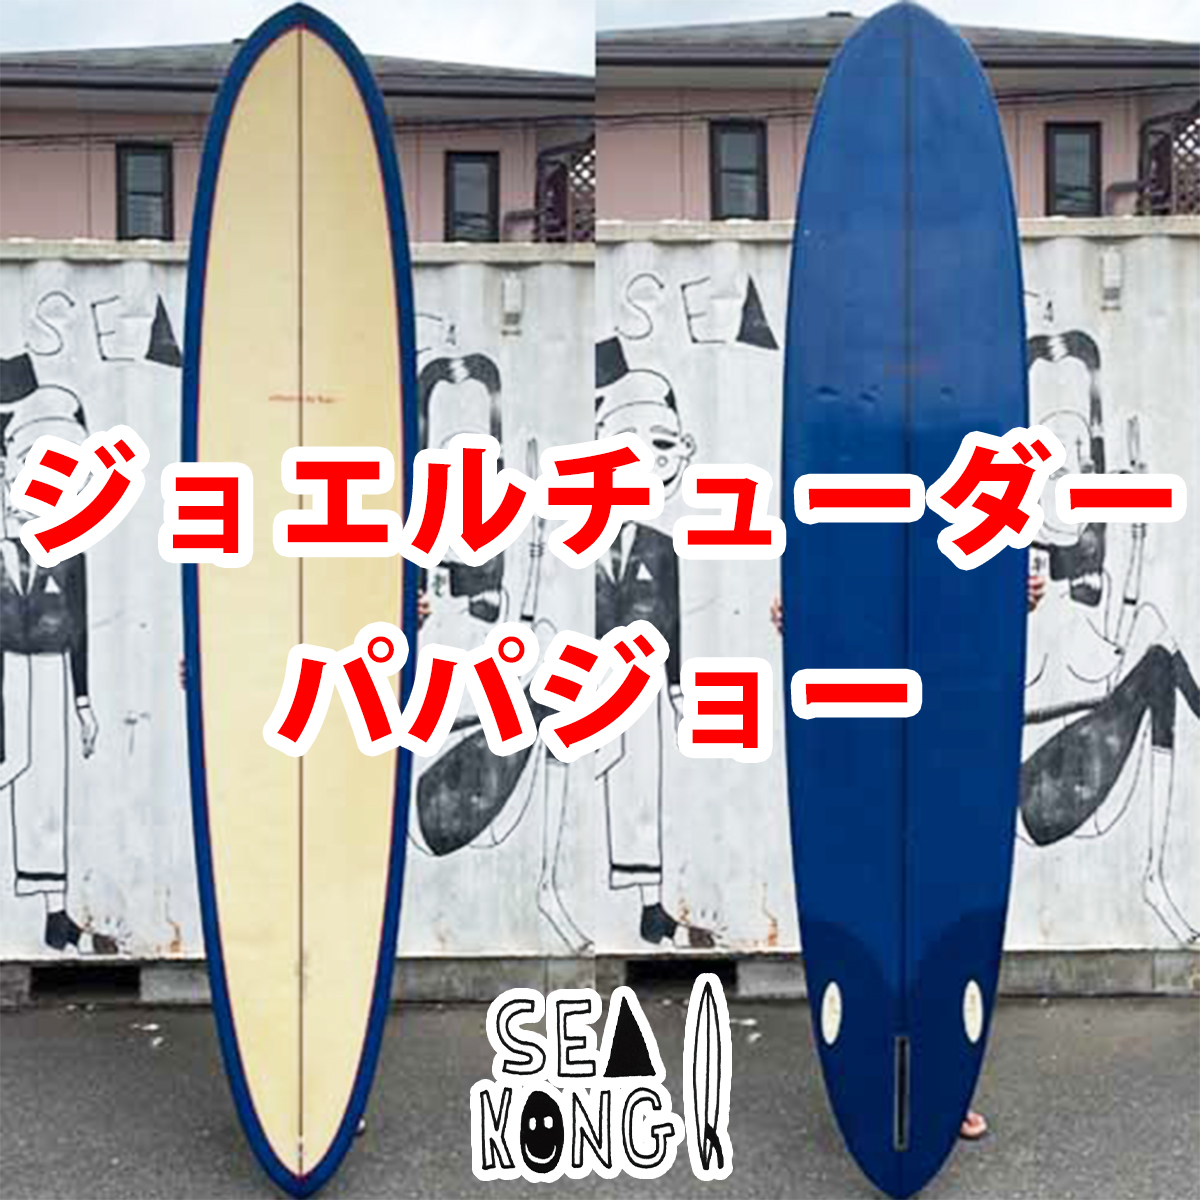 チューダーサーフボード『パパジョー』Tudor Surfboards / Papa joe 9.3ft 中古ロングボード